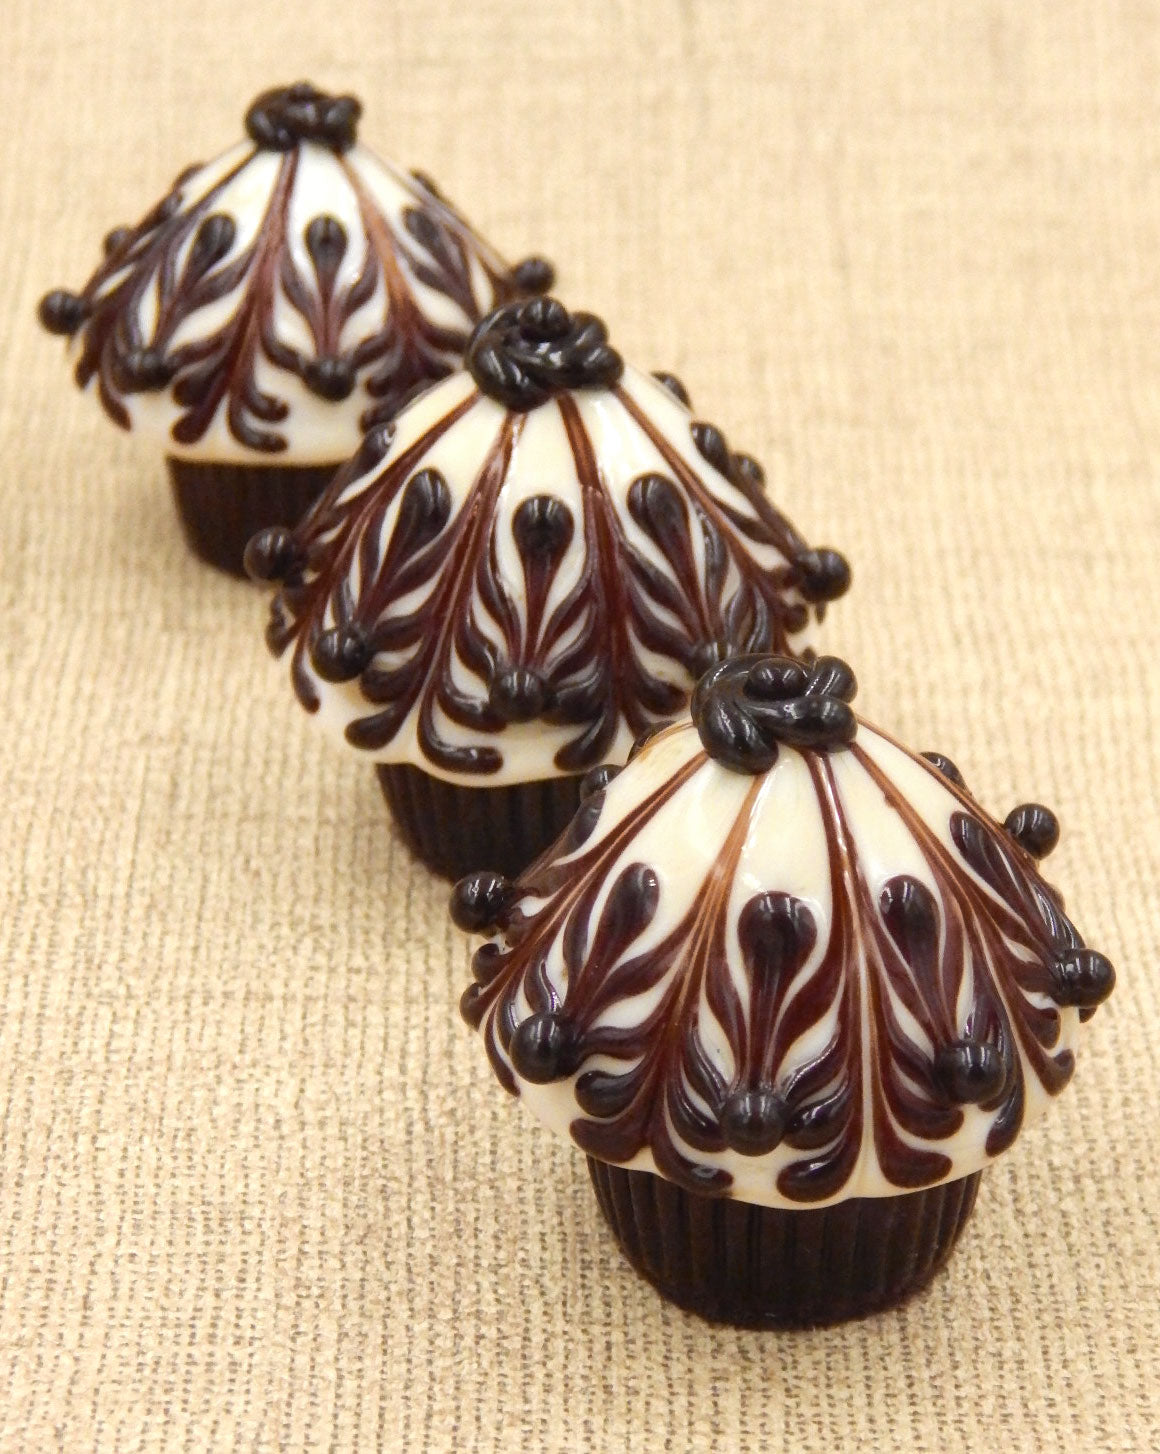 Chocolate & Vanilla Cupcake Truffle (27-301CVC)